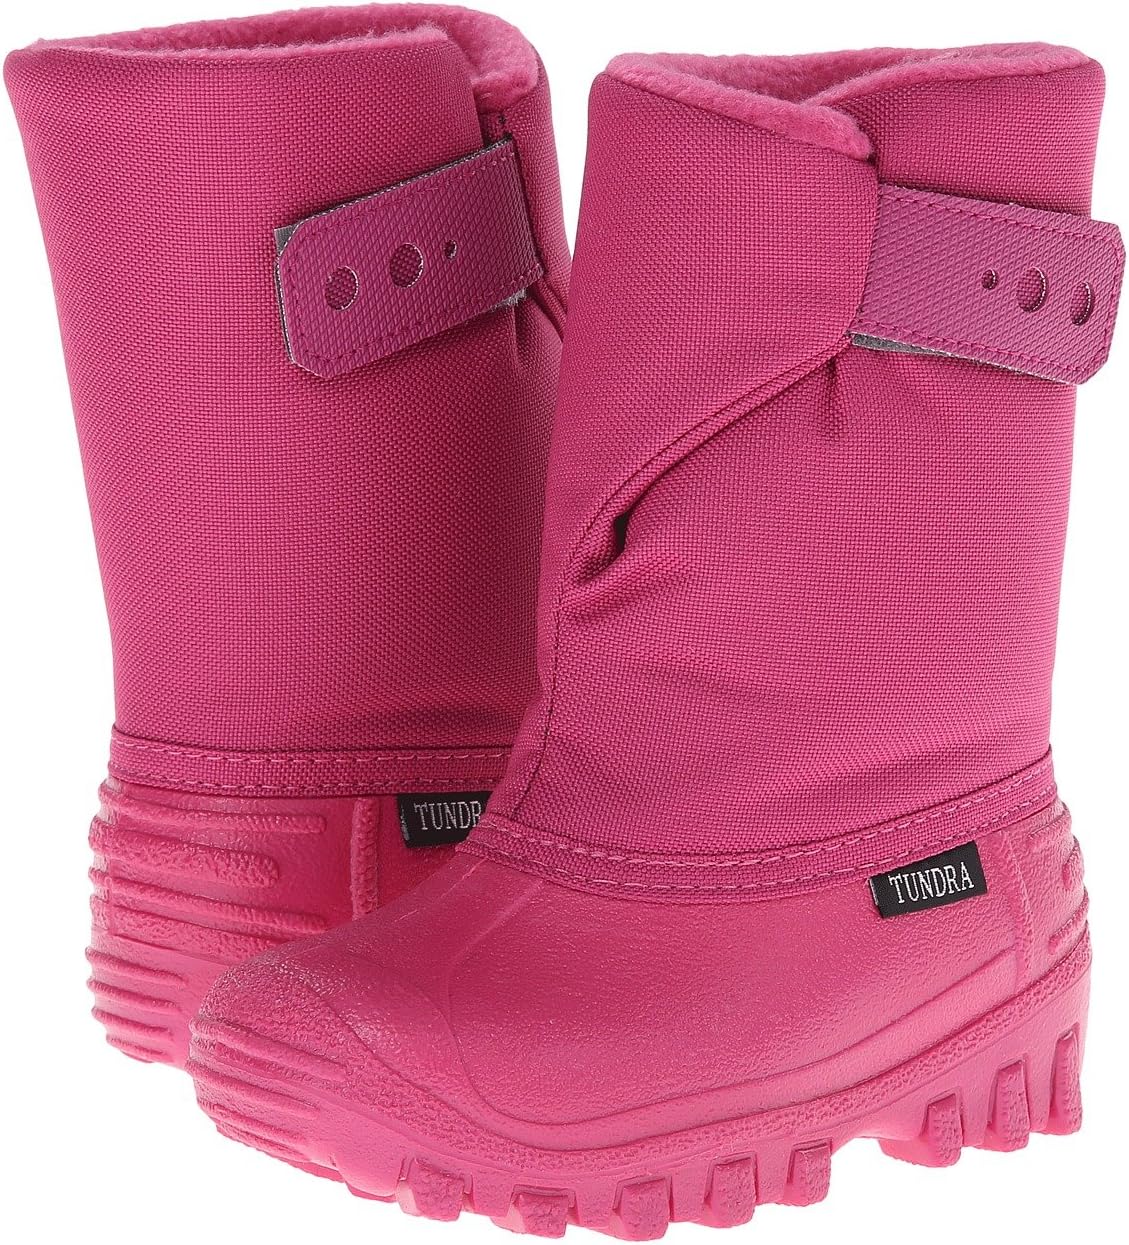 Зимние ботинки Teddy 4 Tundra Boots, цвет Cherry/candy pink